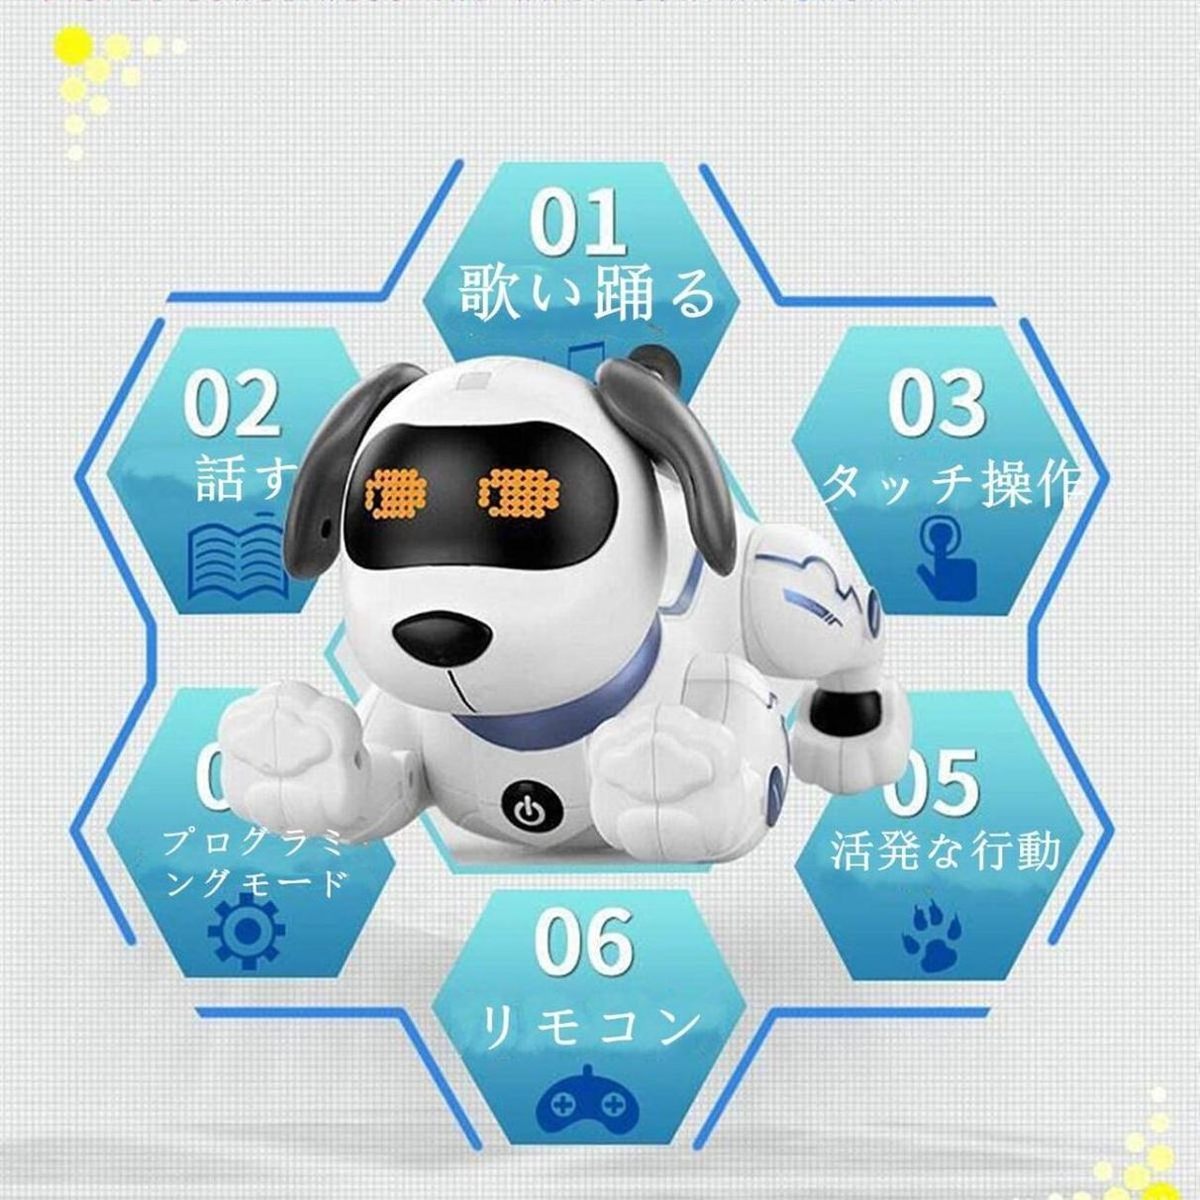  робот собака игрушка собака type робот Stunt собака домашнее животное робот программирование день рождения подарок ребенок игрушка мужчина ученик начальной школы 